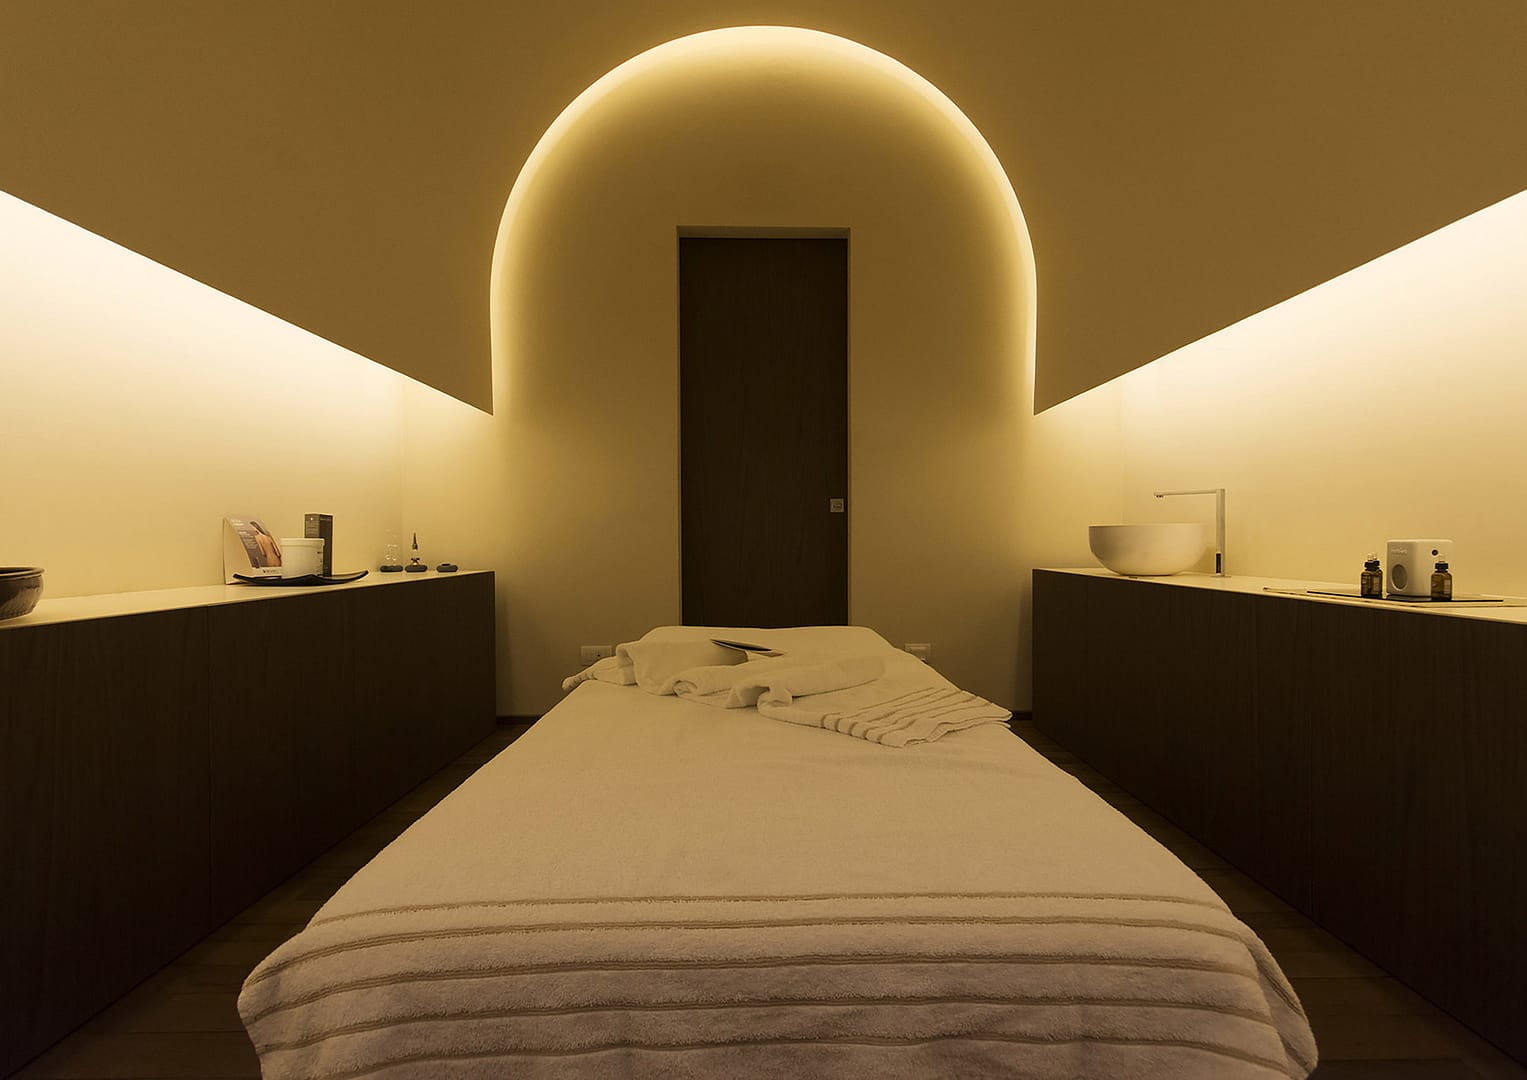 Borgo Cadonega Spa, cabina massaggi con suggestiva copertura a botte retroilluminata